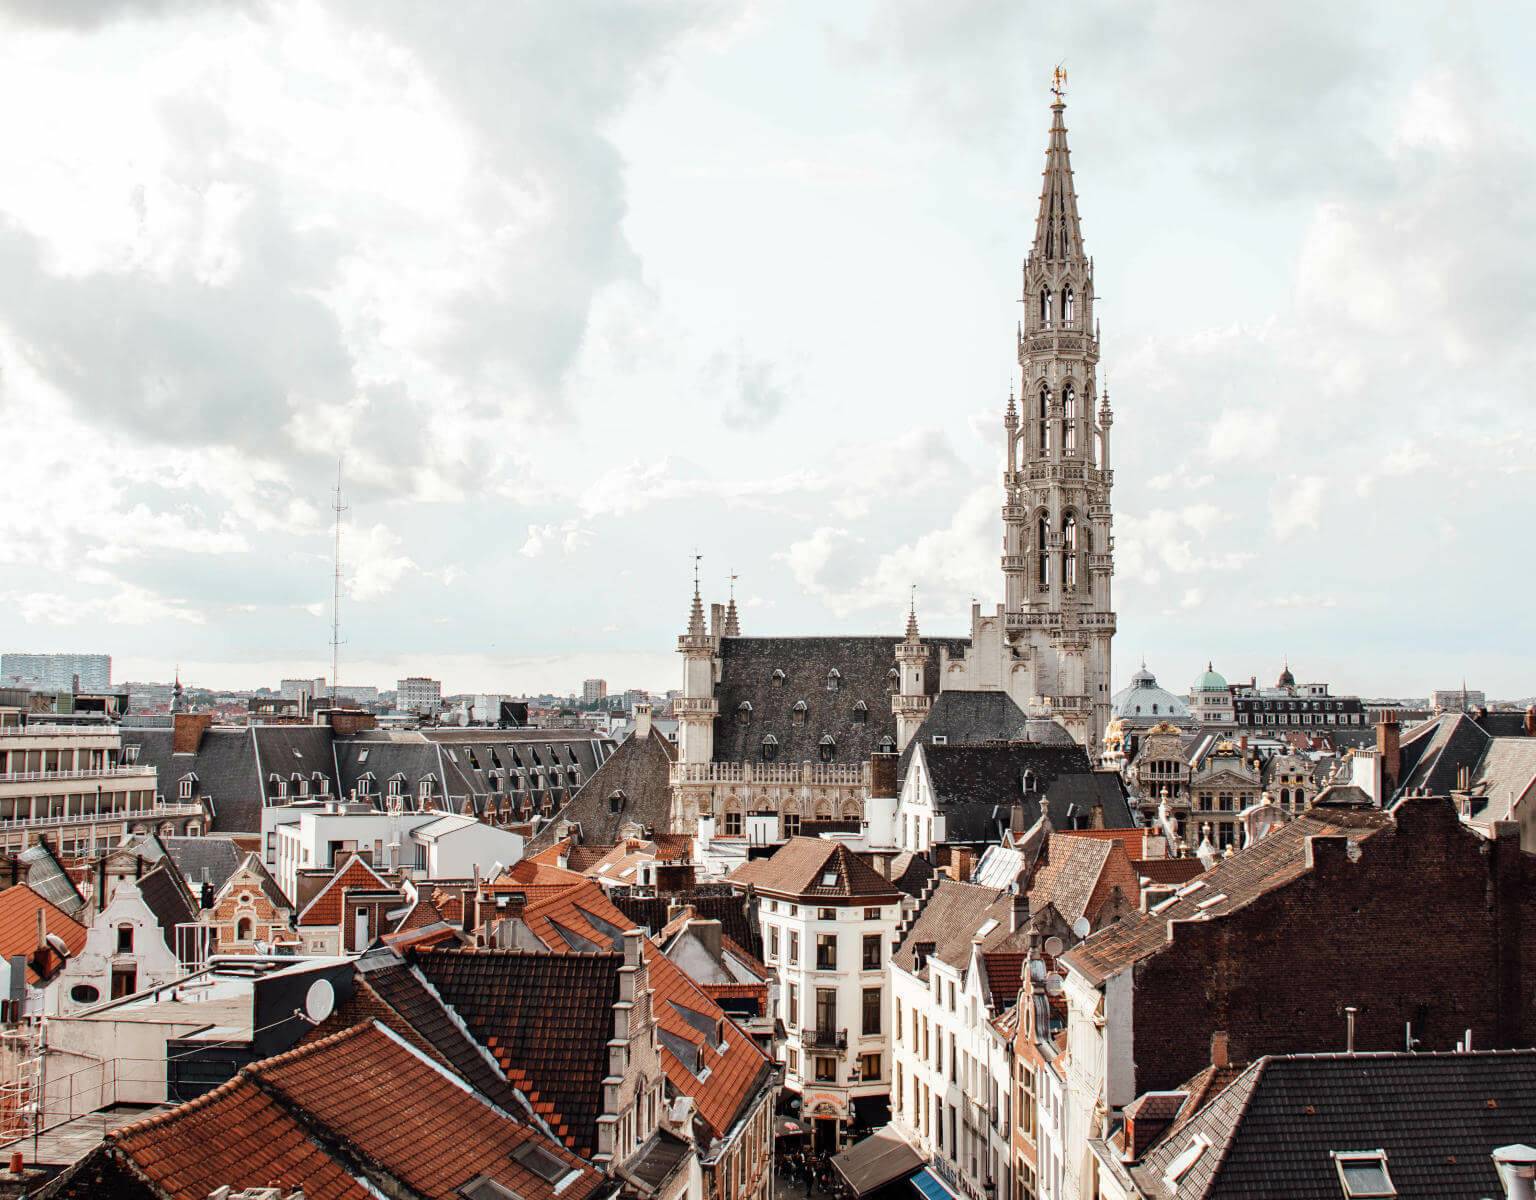 Die Aussicht über die Dächer von Brüssel ist wunderschön.